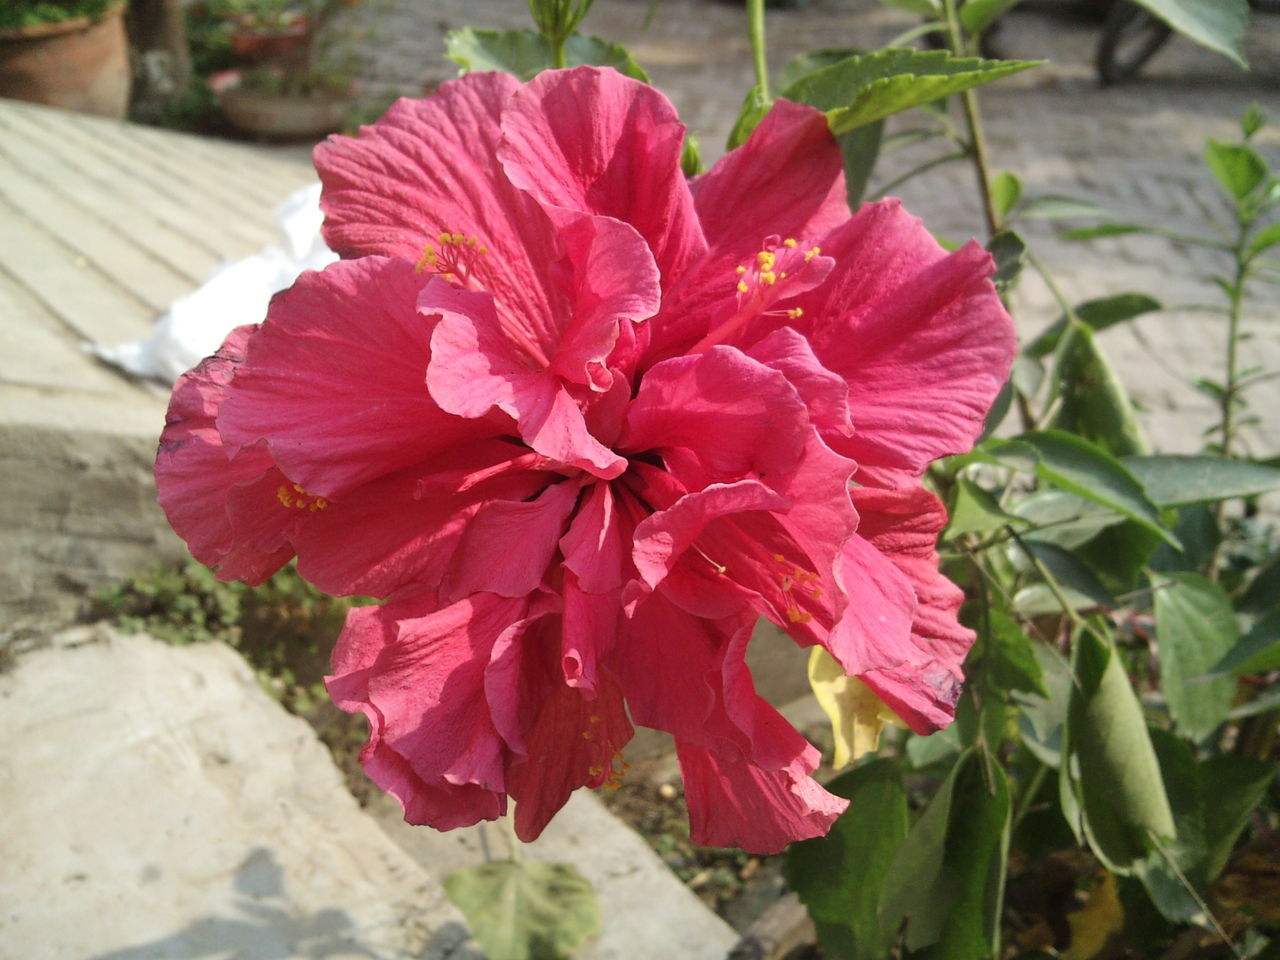 扶桑:鲜艳大红花,养眼助健康